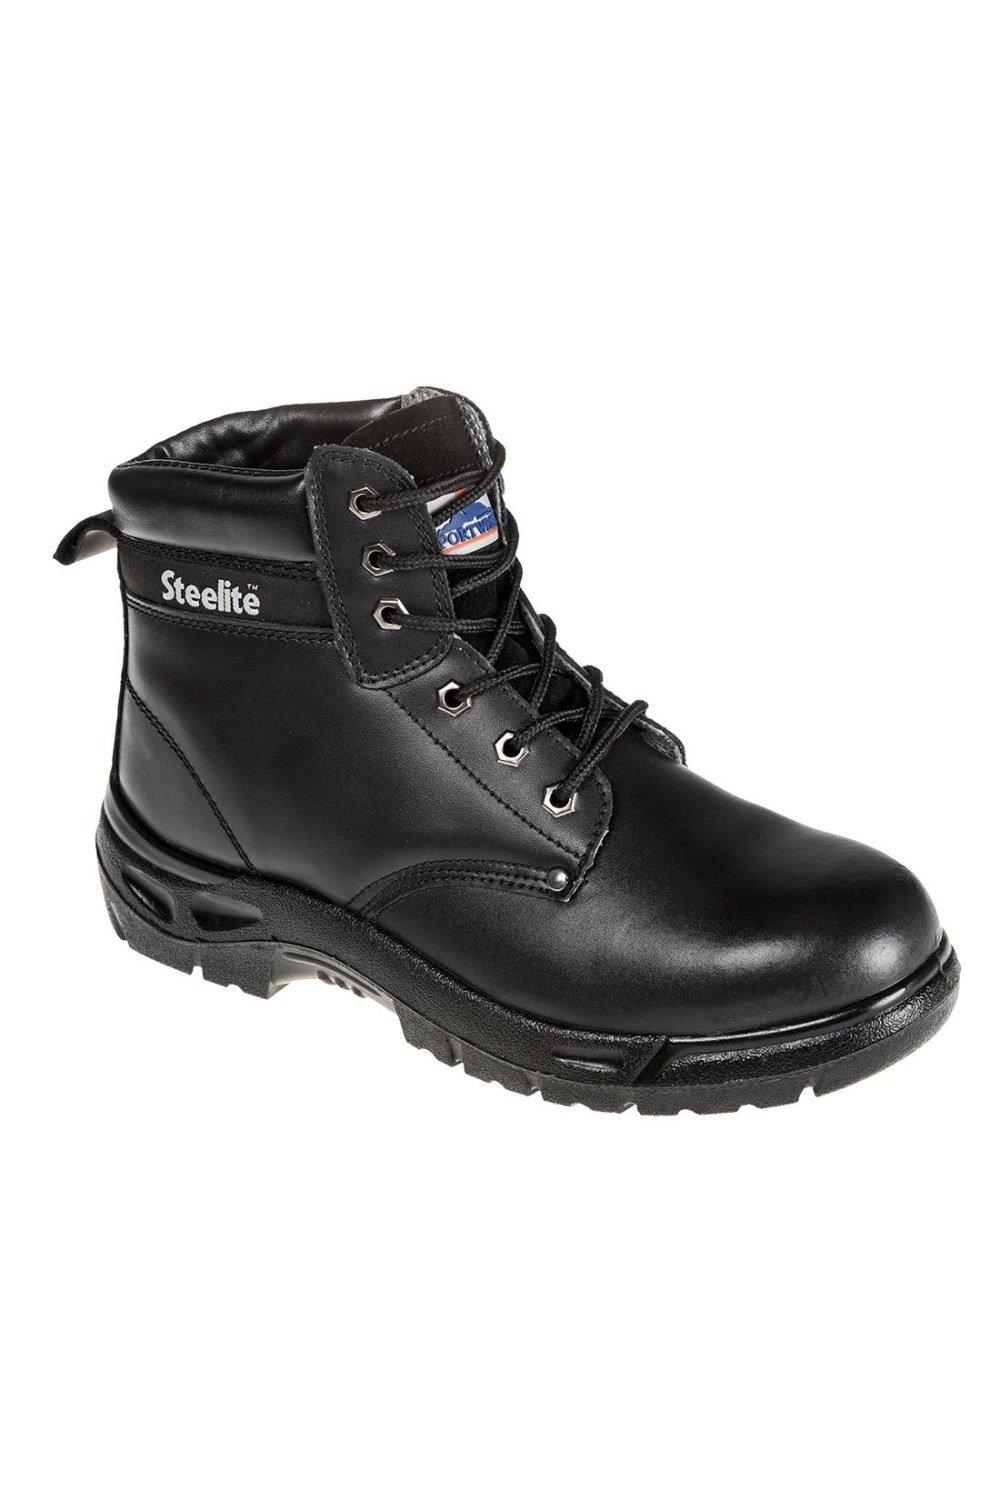 Кожаные защитные ботинки Steelite Portwest, черный цена и фото